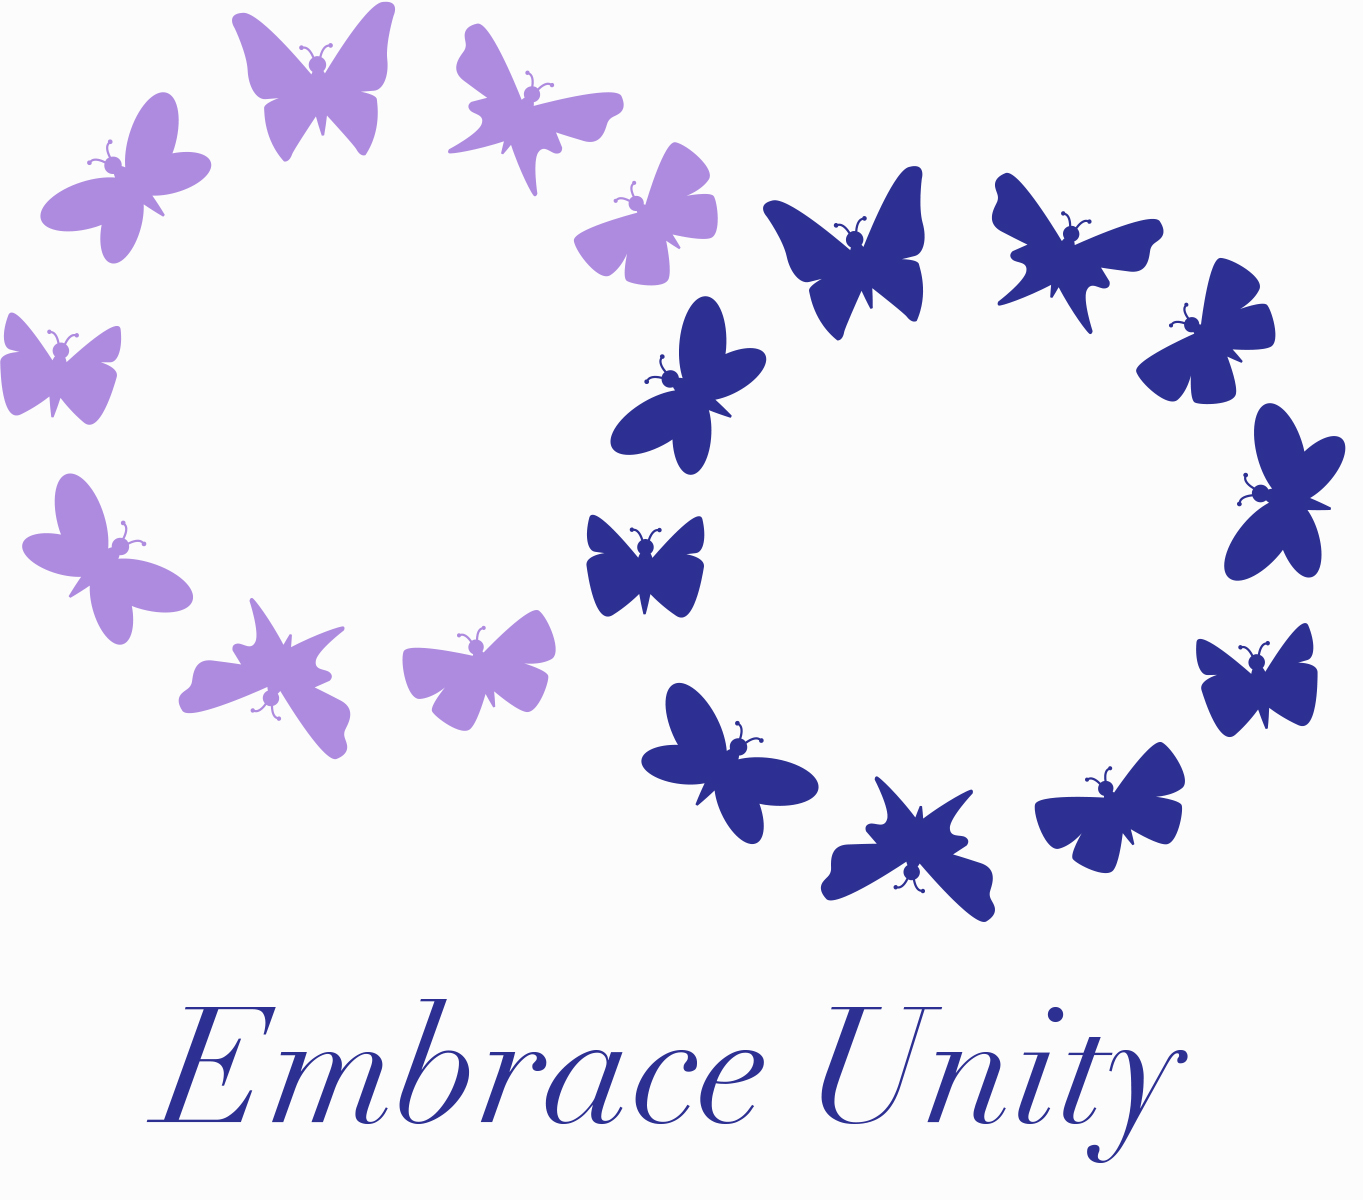 Embrace Unity